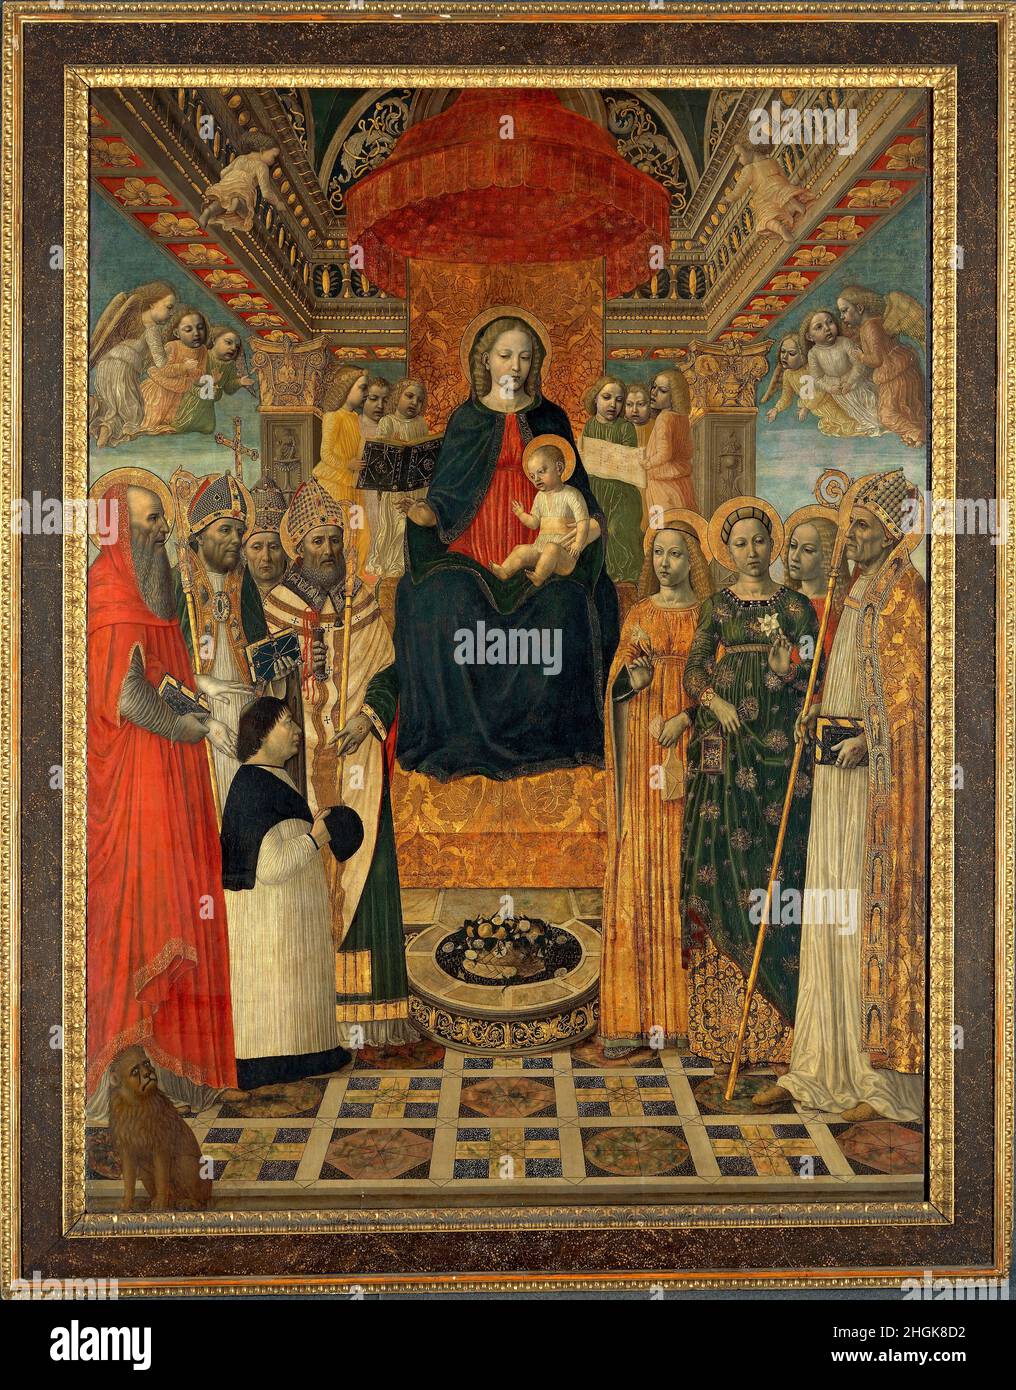 Sacra conversazione - 1485c. - tempera e oil on wood 242 x 182 cm - Da Fossano Ambrogio - Bergognone - Stock Photo